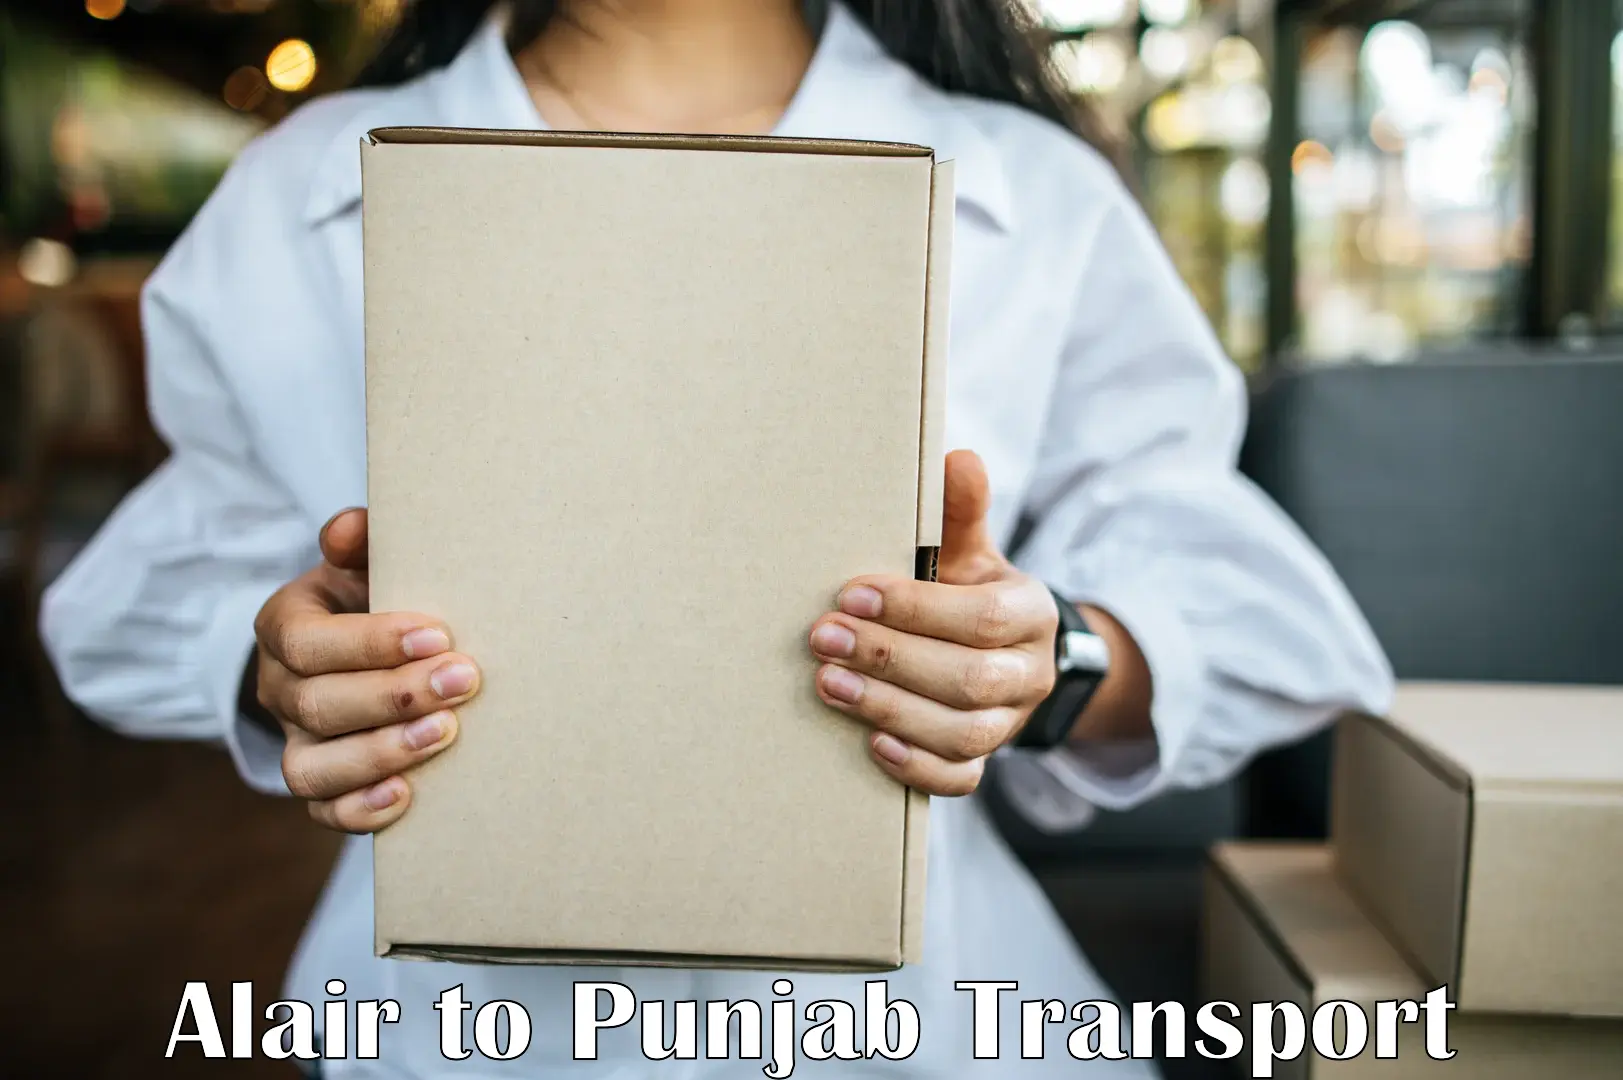 Interstate goods transport Alair to Punjab